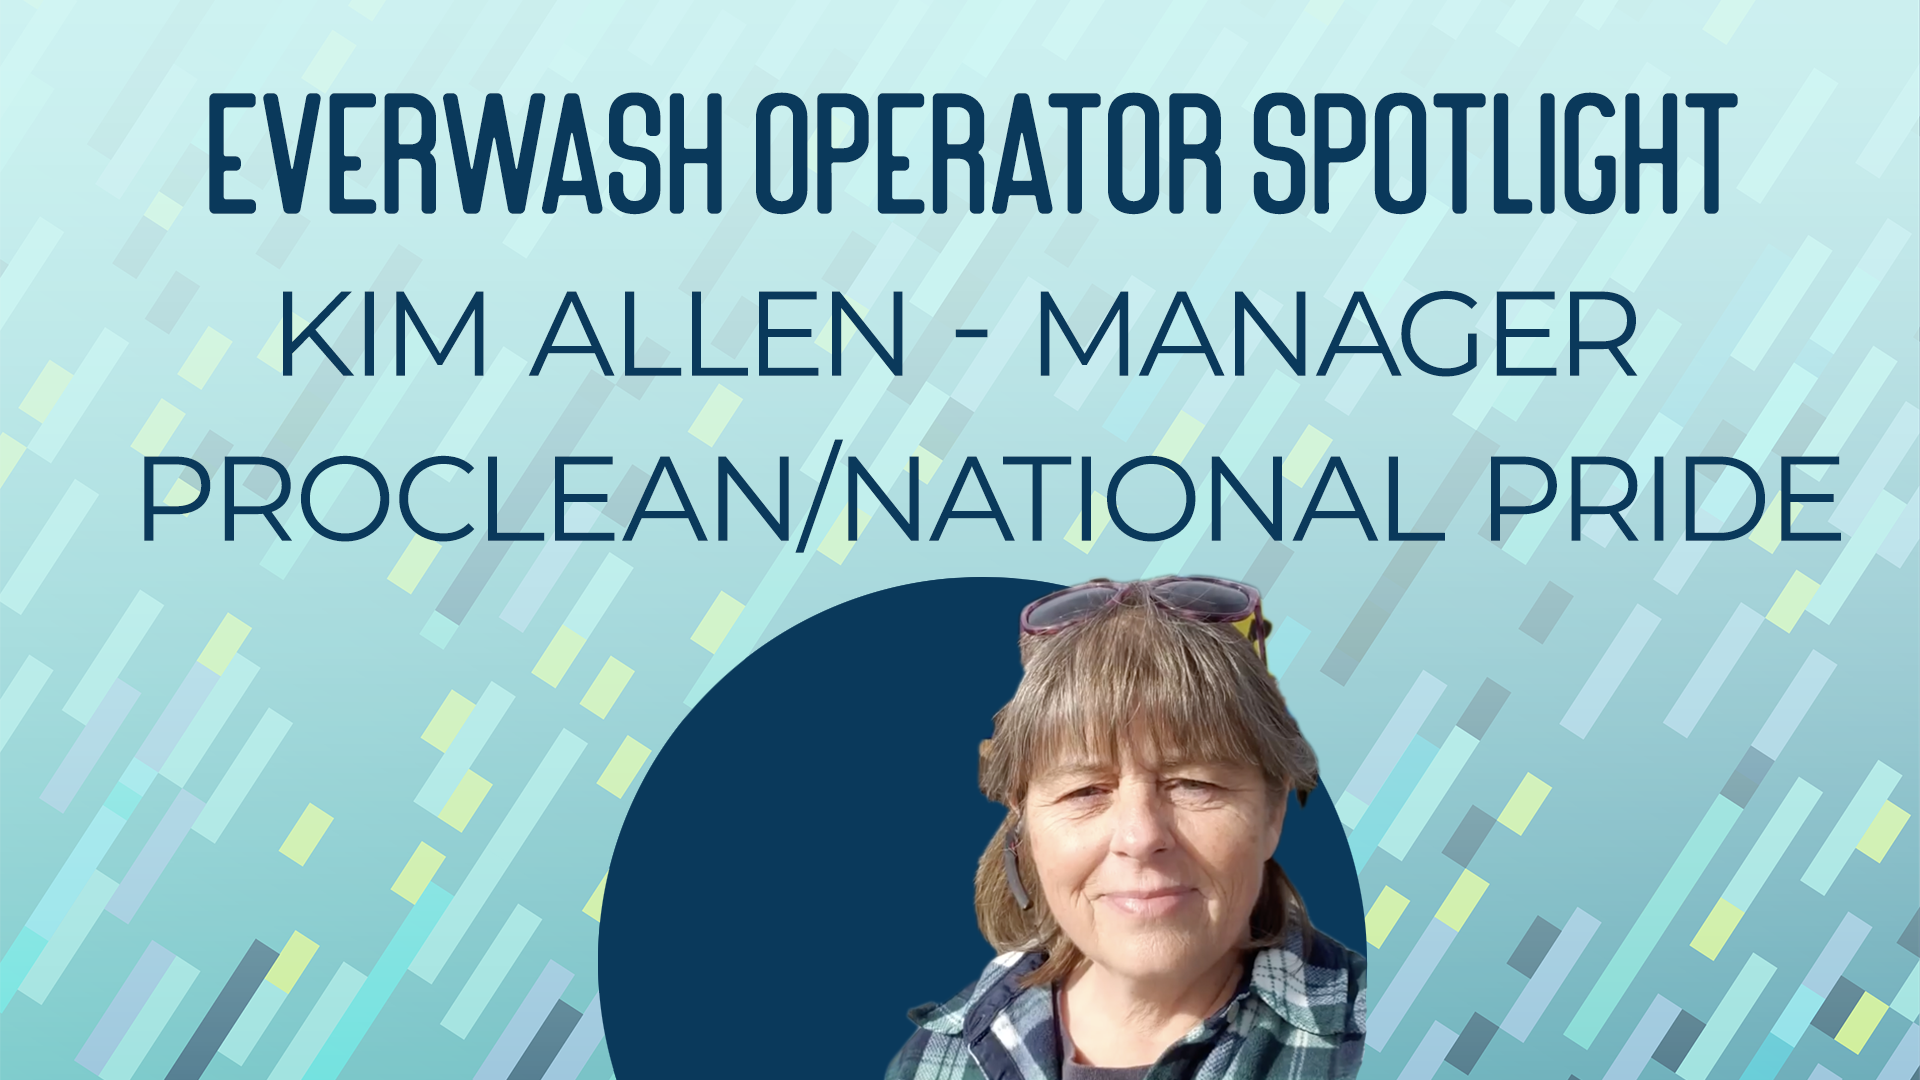 Kim Allen manages 27 car wash locations in Colorado.